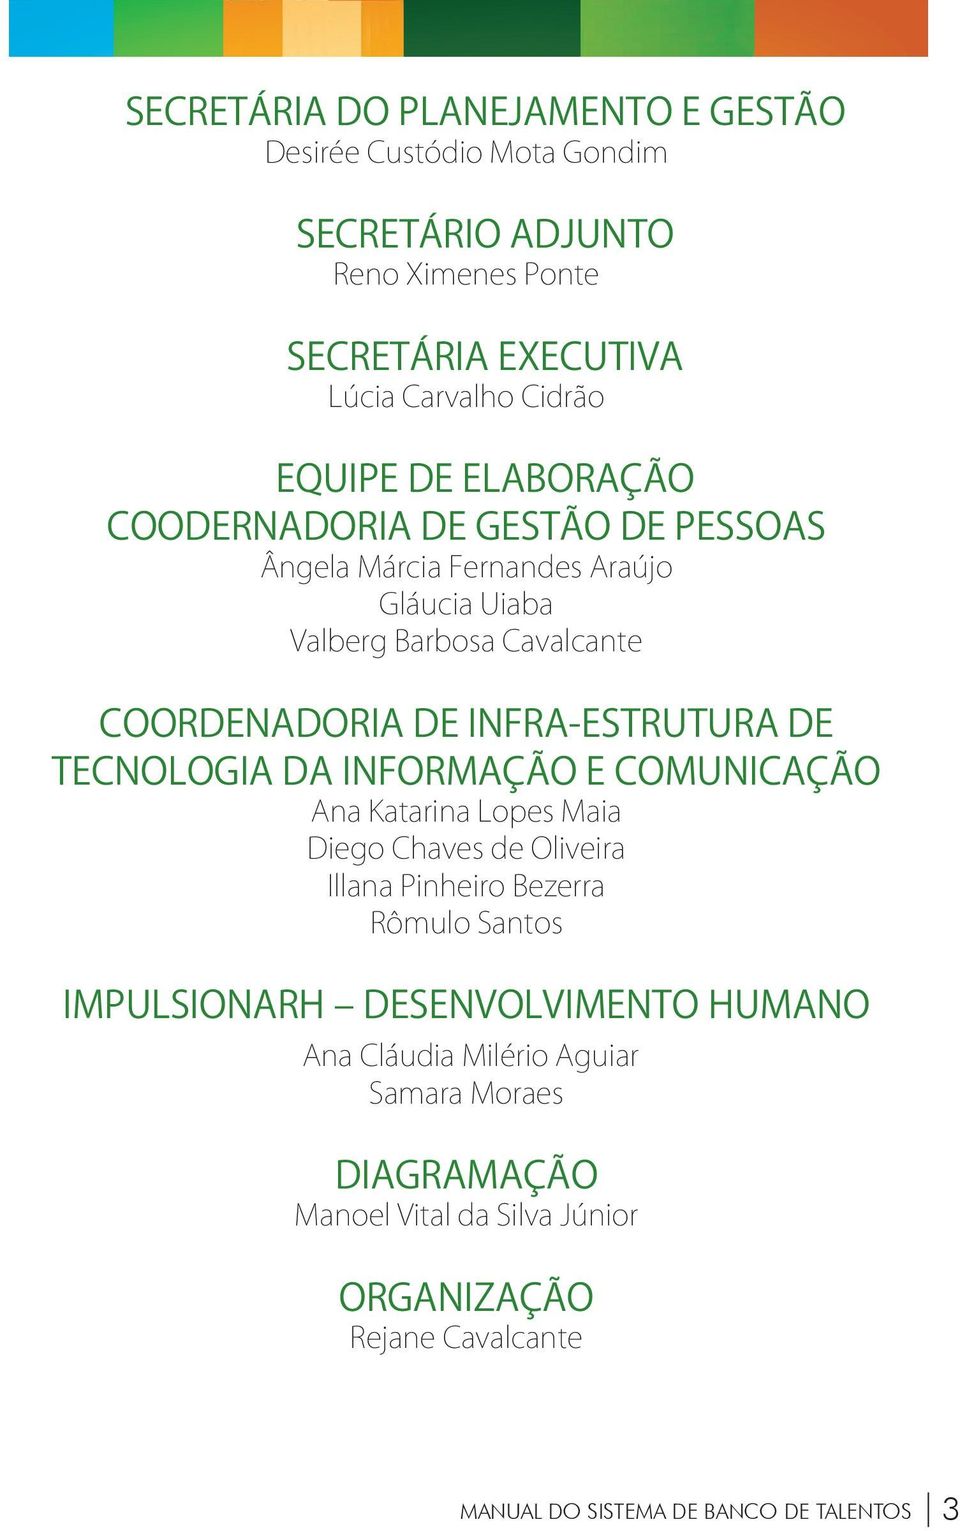 Infra-estrutura de Tecnologia da Informação e Comunicação Ana Katarina Lopes Maia Diego Chaves de Oliveira Illana Pinheiro Bezerra Rômulo Santos